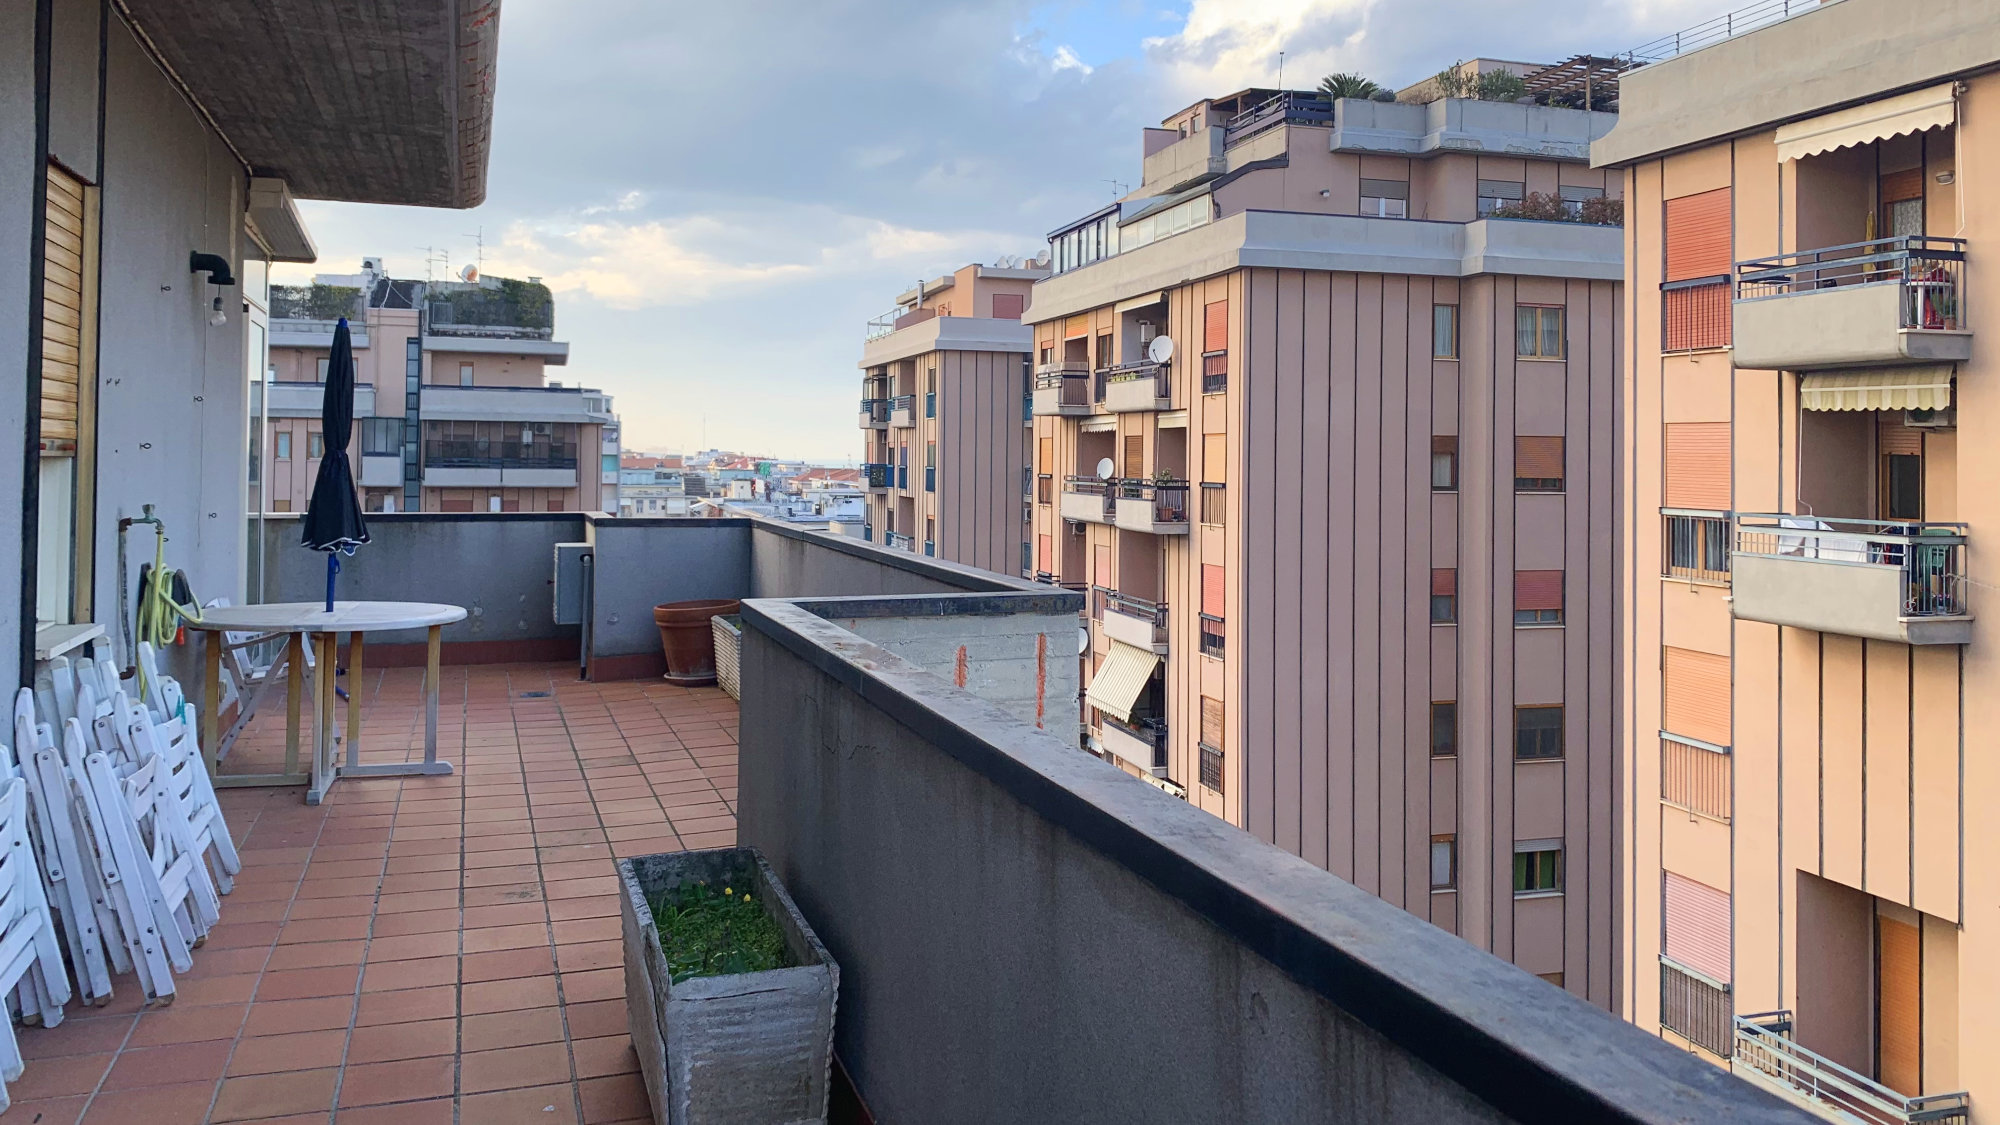 Grazioso Attico con terrazzo in AFFITTO a Pescara Centro